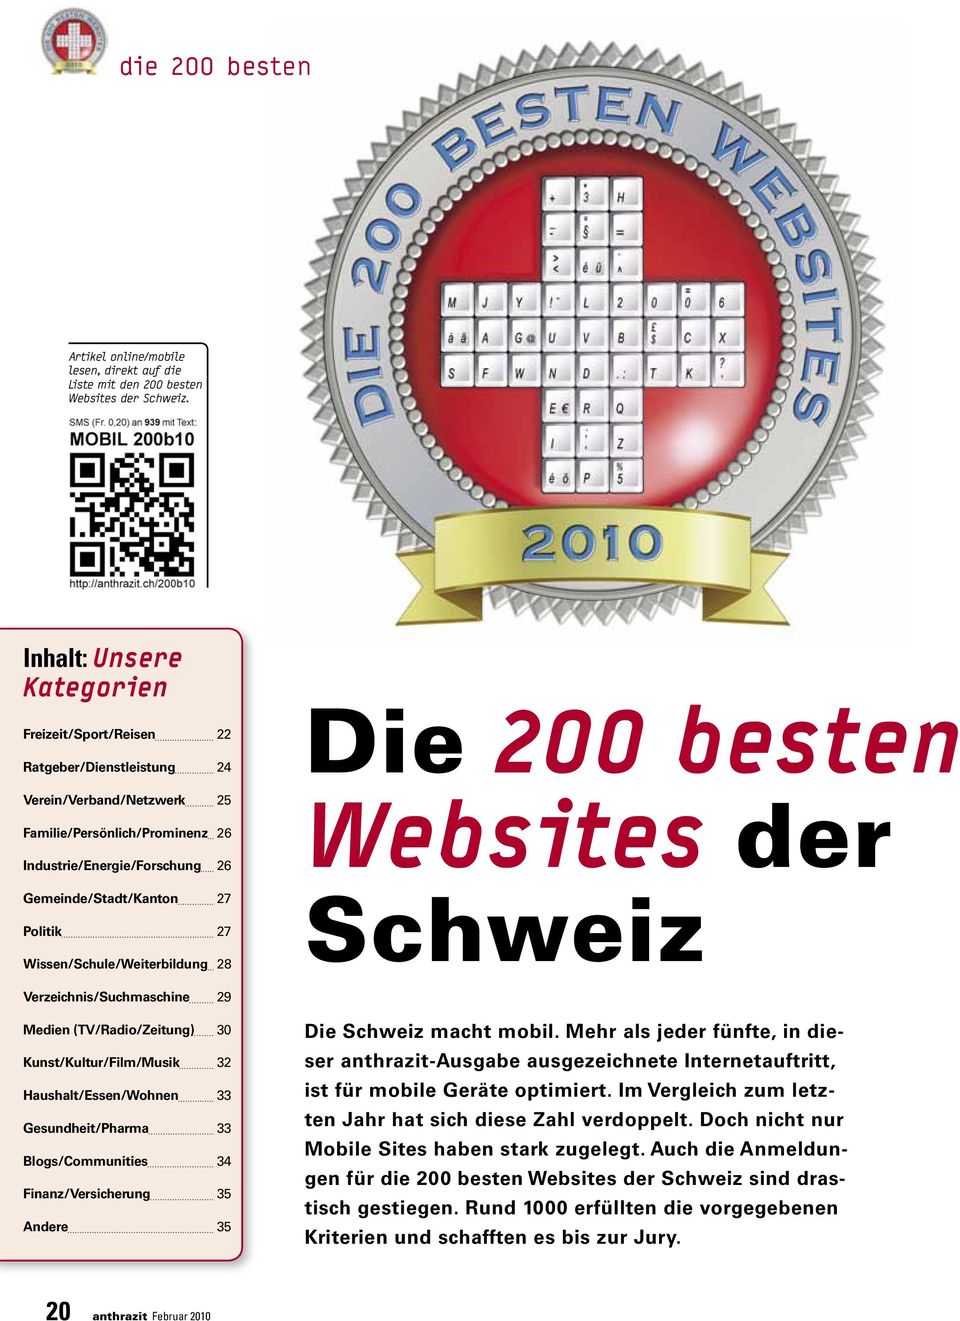 Politik 27 Wissen/Schule/Weiterbildung 28 Die 200 besten Websites der Schweiz Verzeichnis/Suchmaschine 29 Medien (TV/Radio/Zeitung) 30 Kunst/Kultur/Film/Musik 32 Haushalt/Essen/Wohnen 33